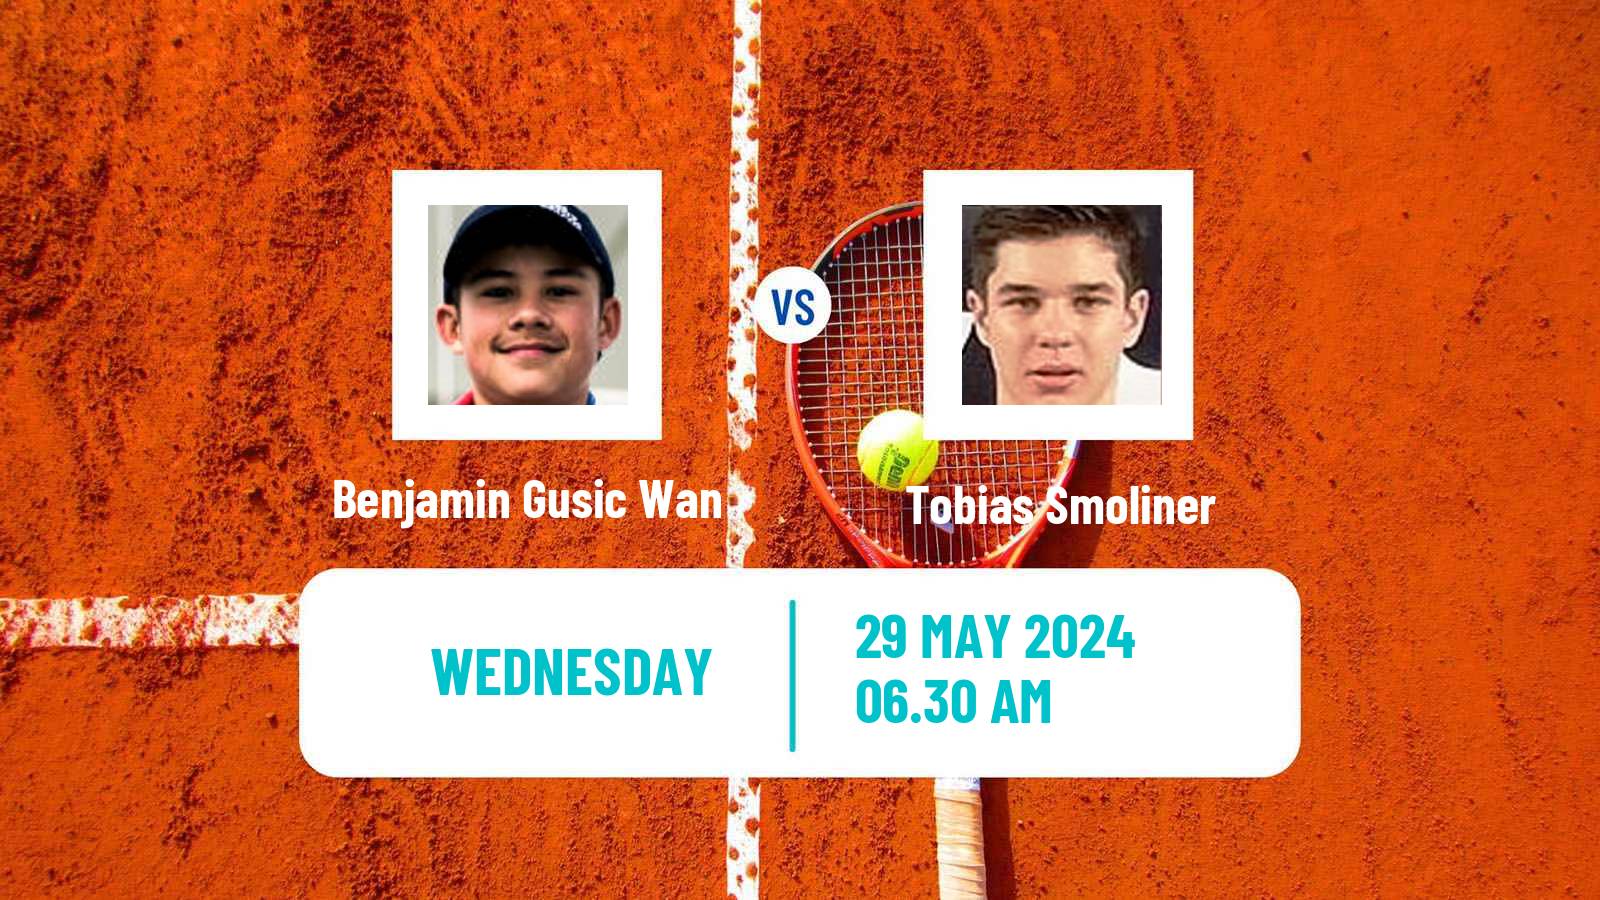 Tennis ITF M15 Vrhnika Men Benjamin Gusic Wan - Tobias Smoliner